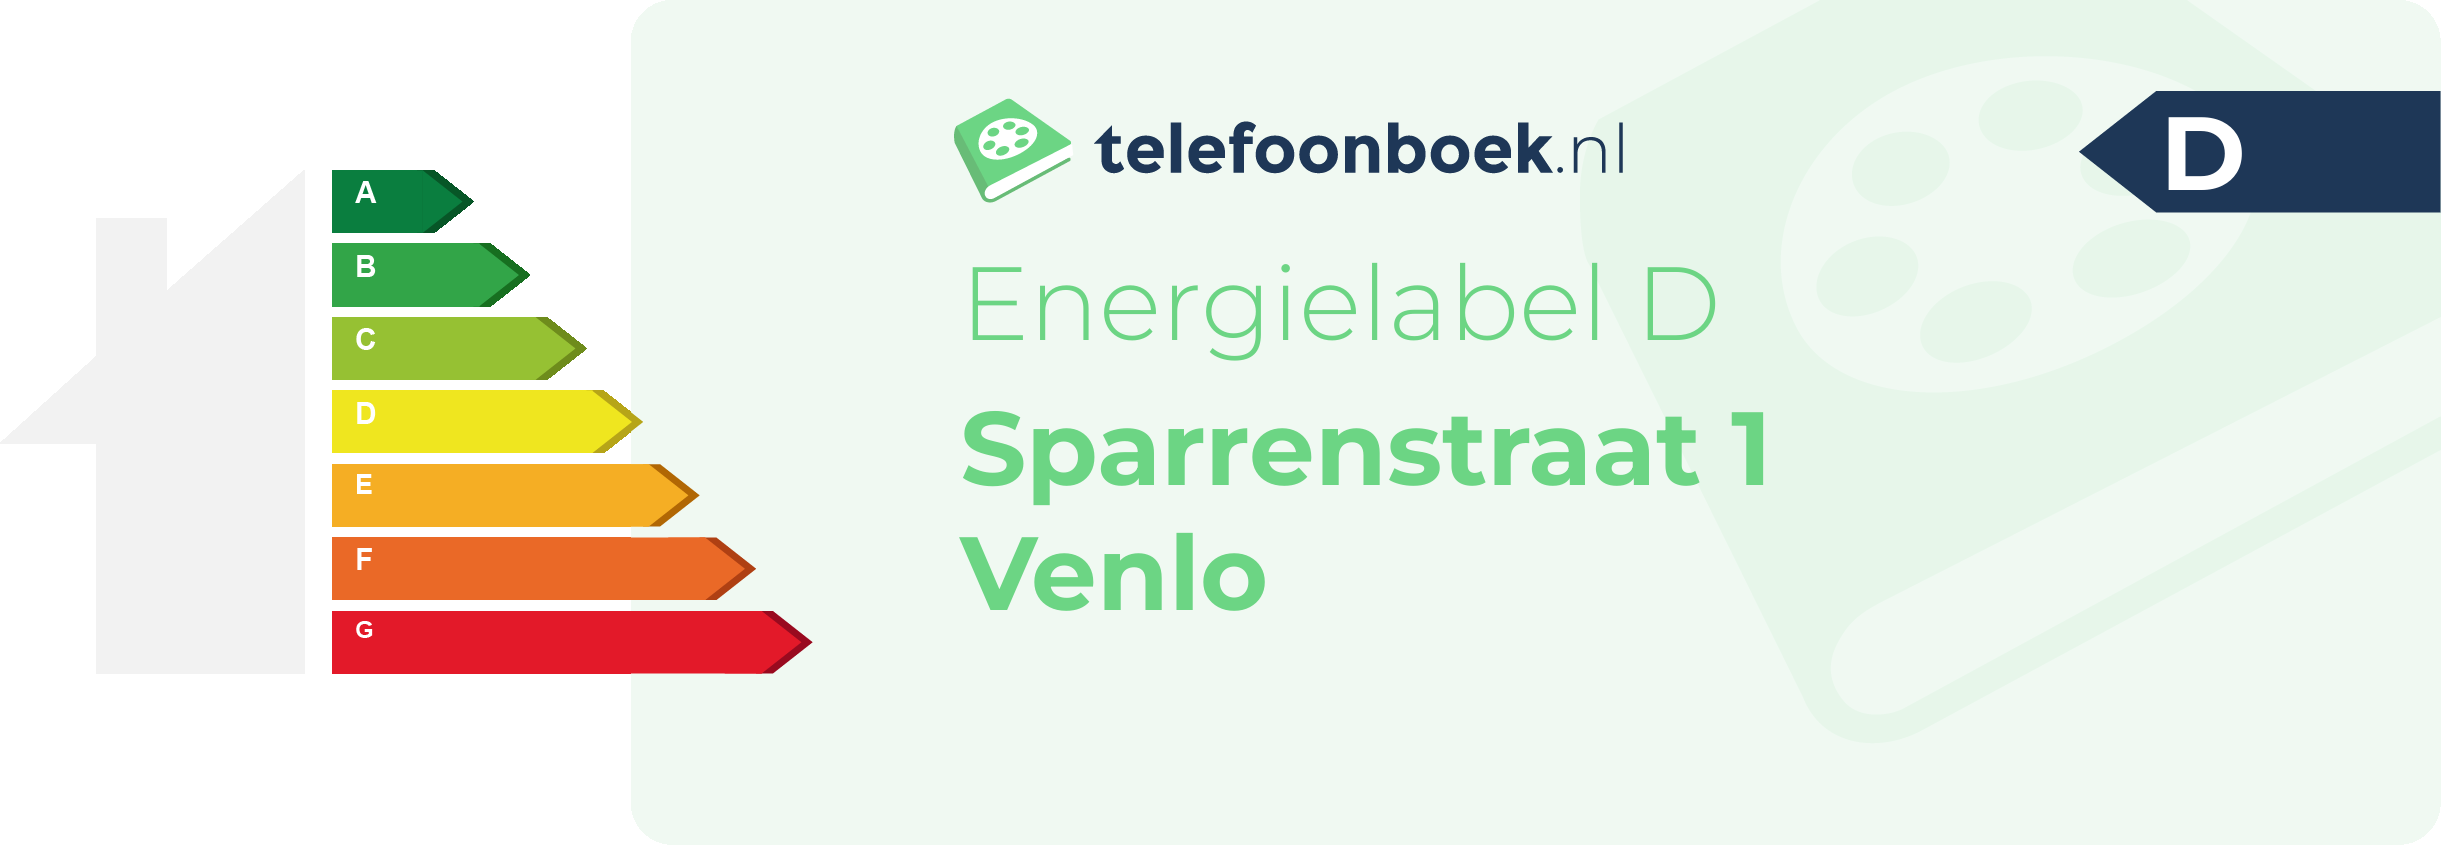 Energielabel Sparrenstraat 1 Venlo